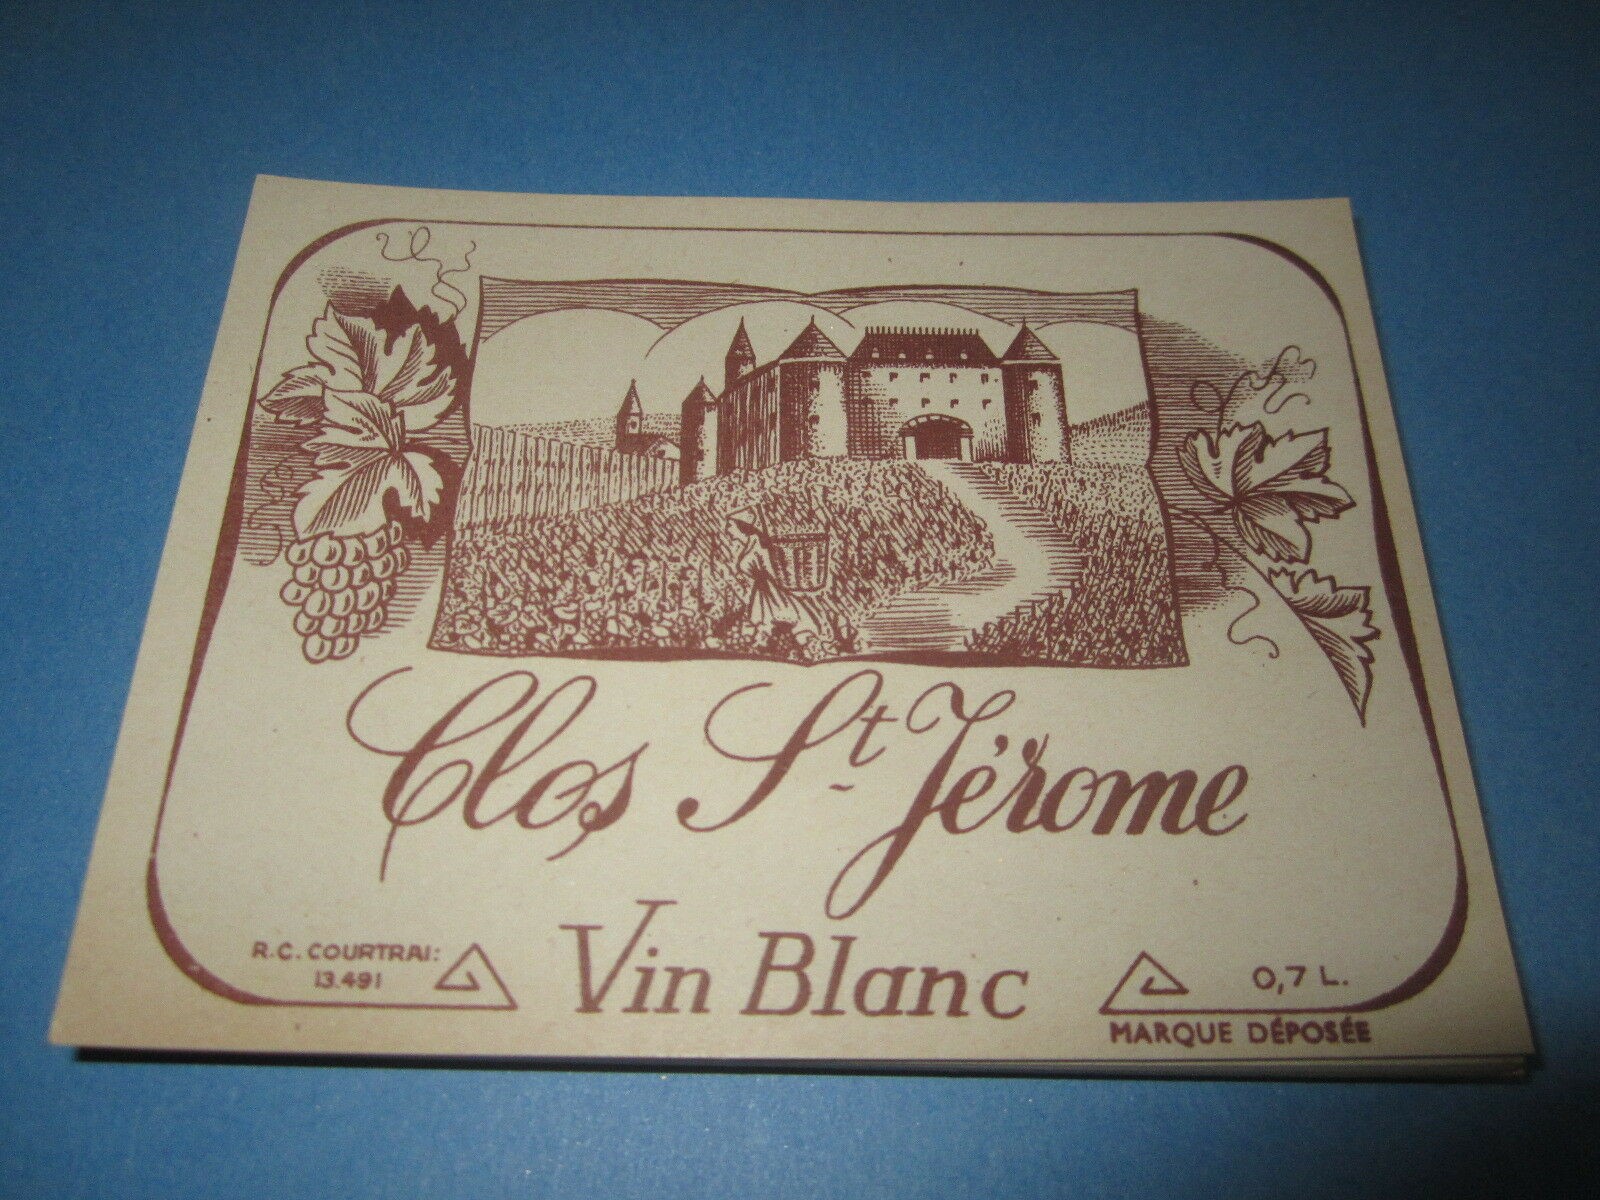  Lot of 100 Old Vintage - Clos St Jerome Vin Bl...